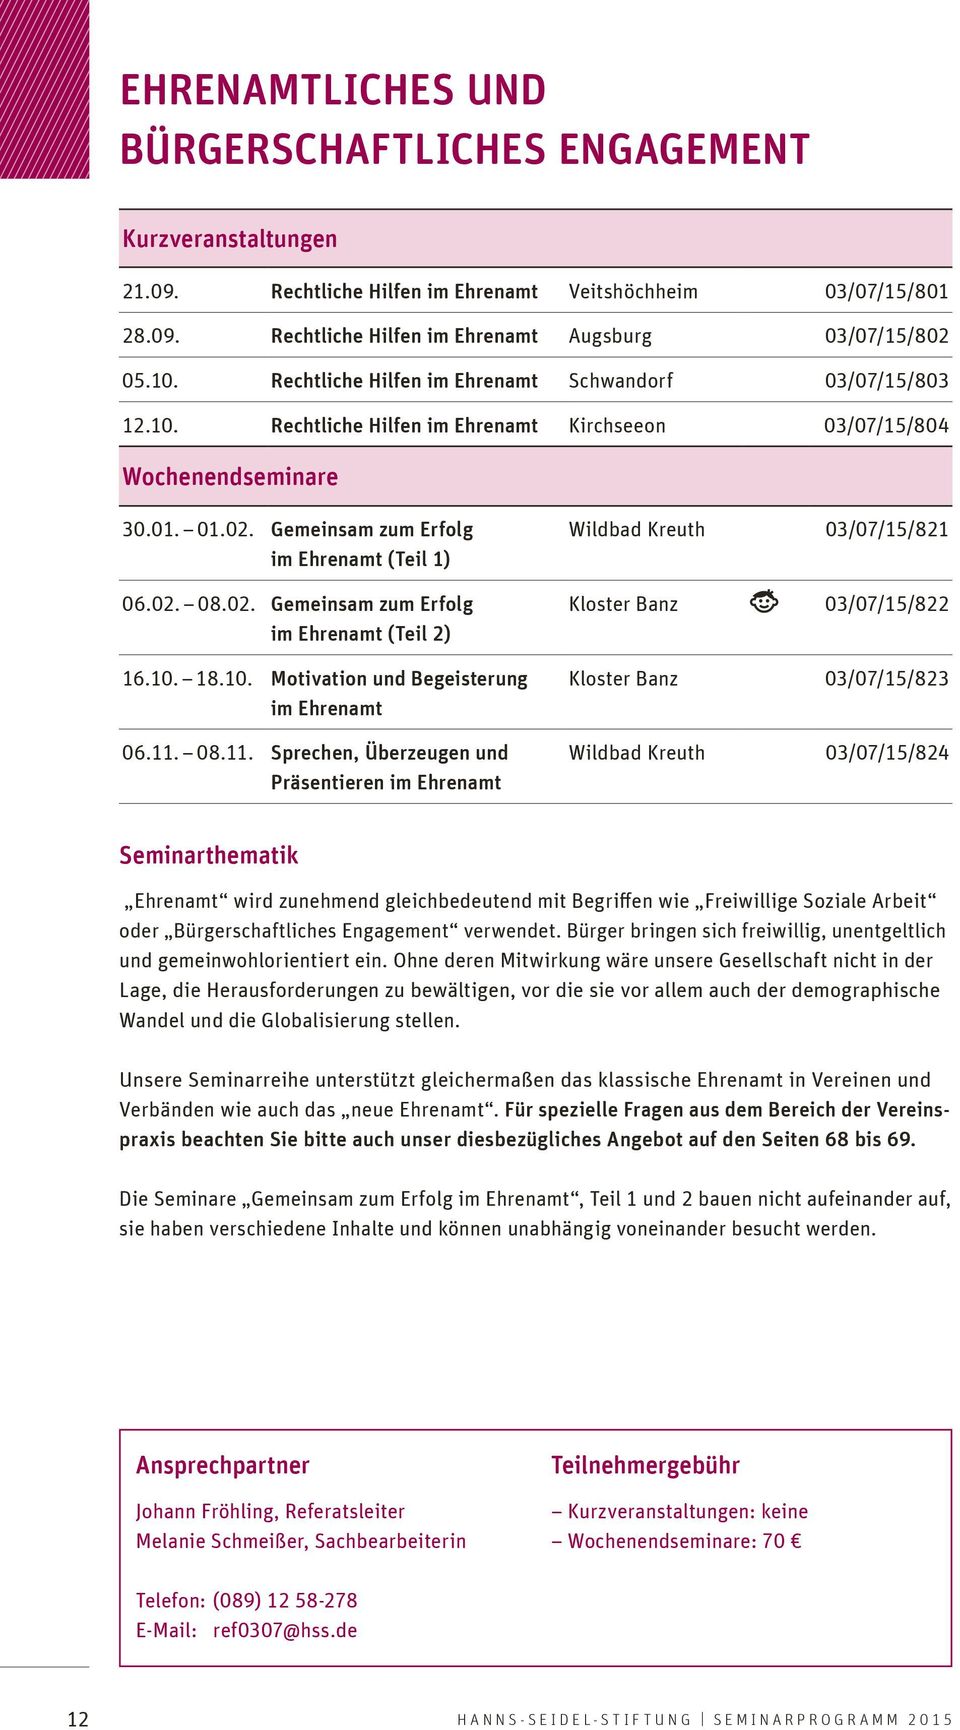 02. Gemeinsam zum Erfolg im Ehrenamt (Teil 2) 16.10. 18.10. Motivation und Begeisterung im Ehrenamt 06.11.